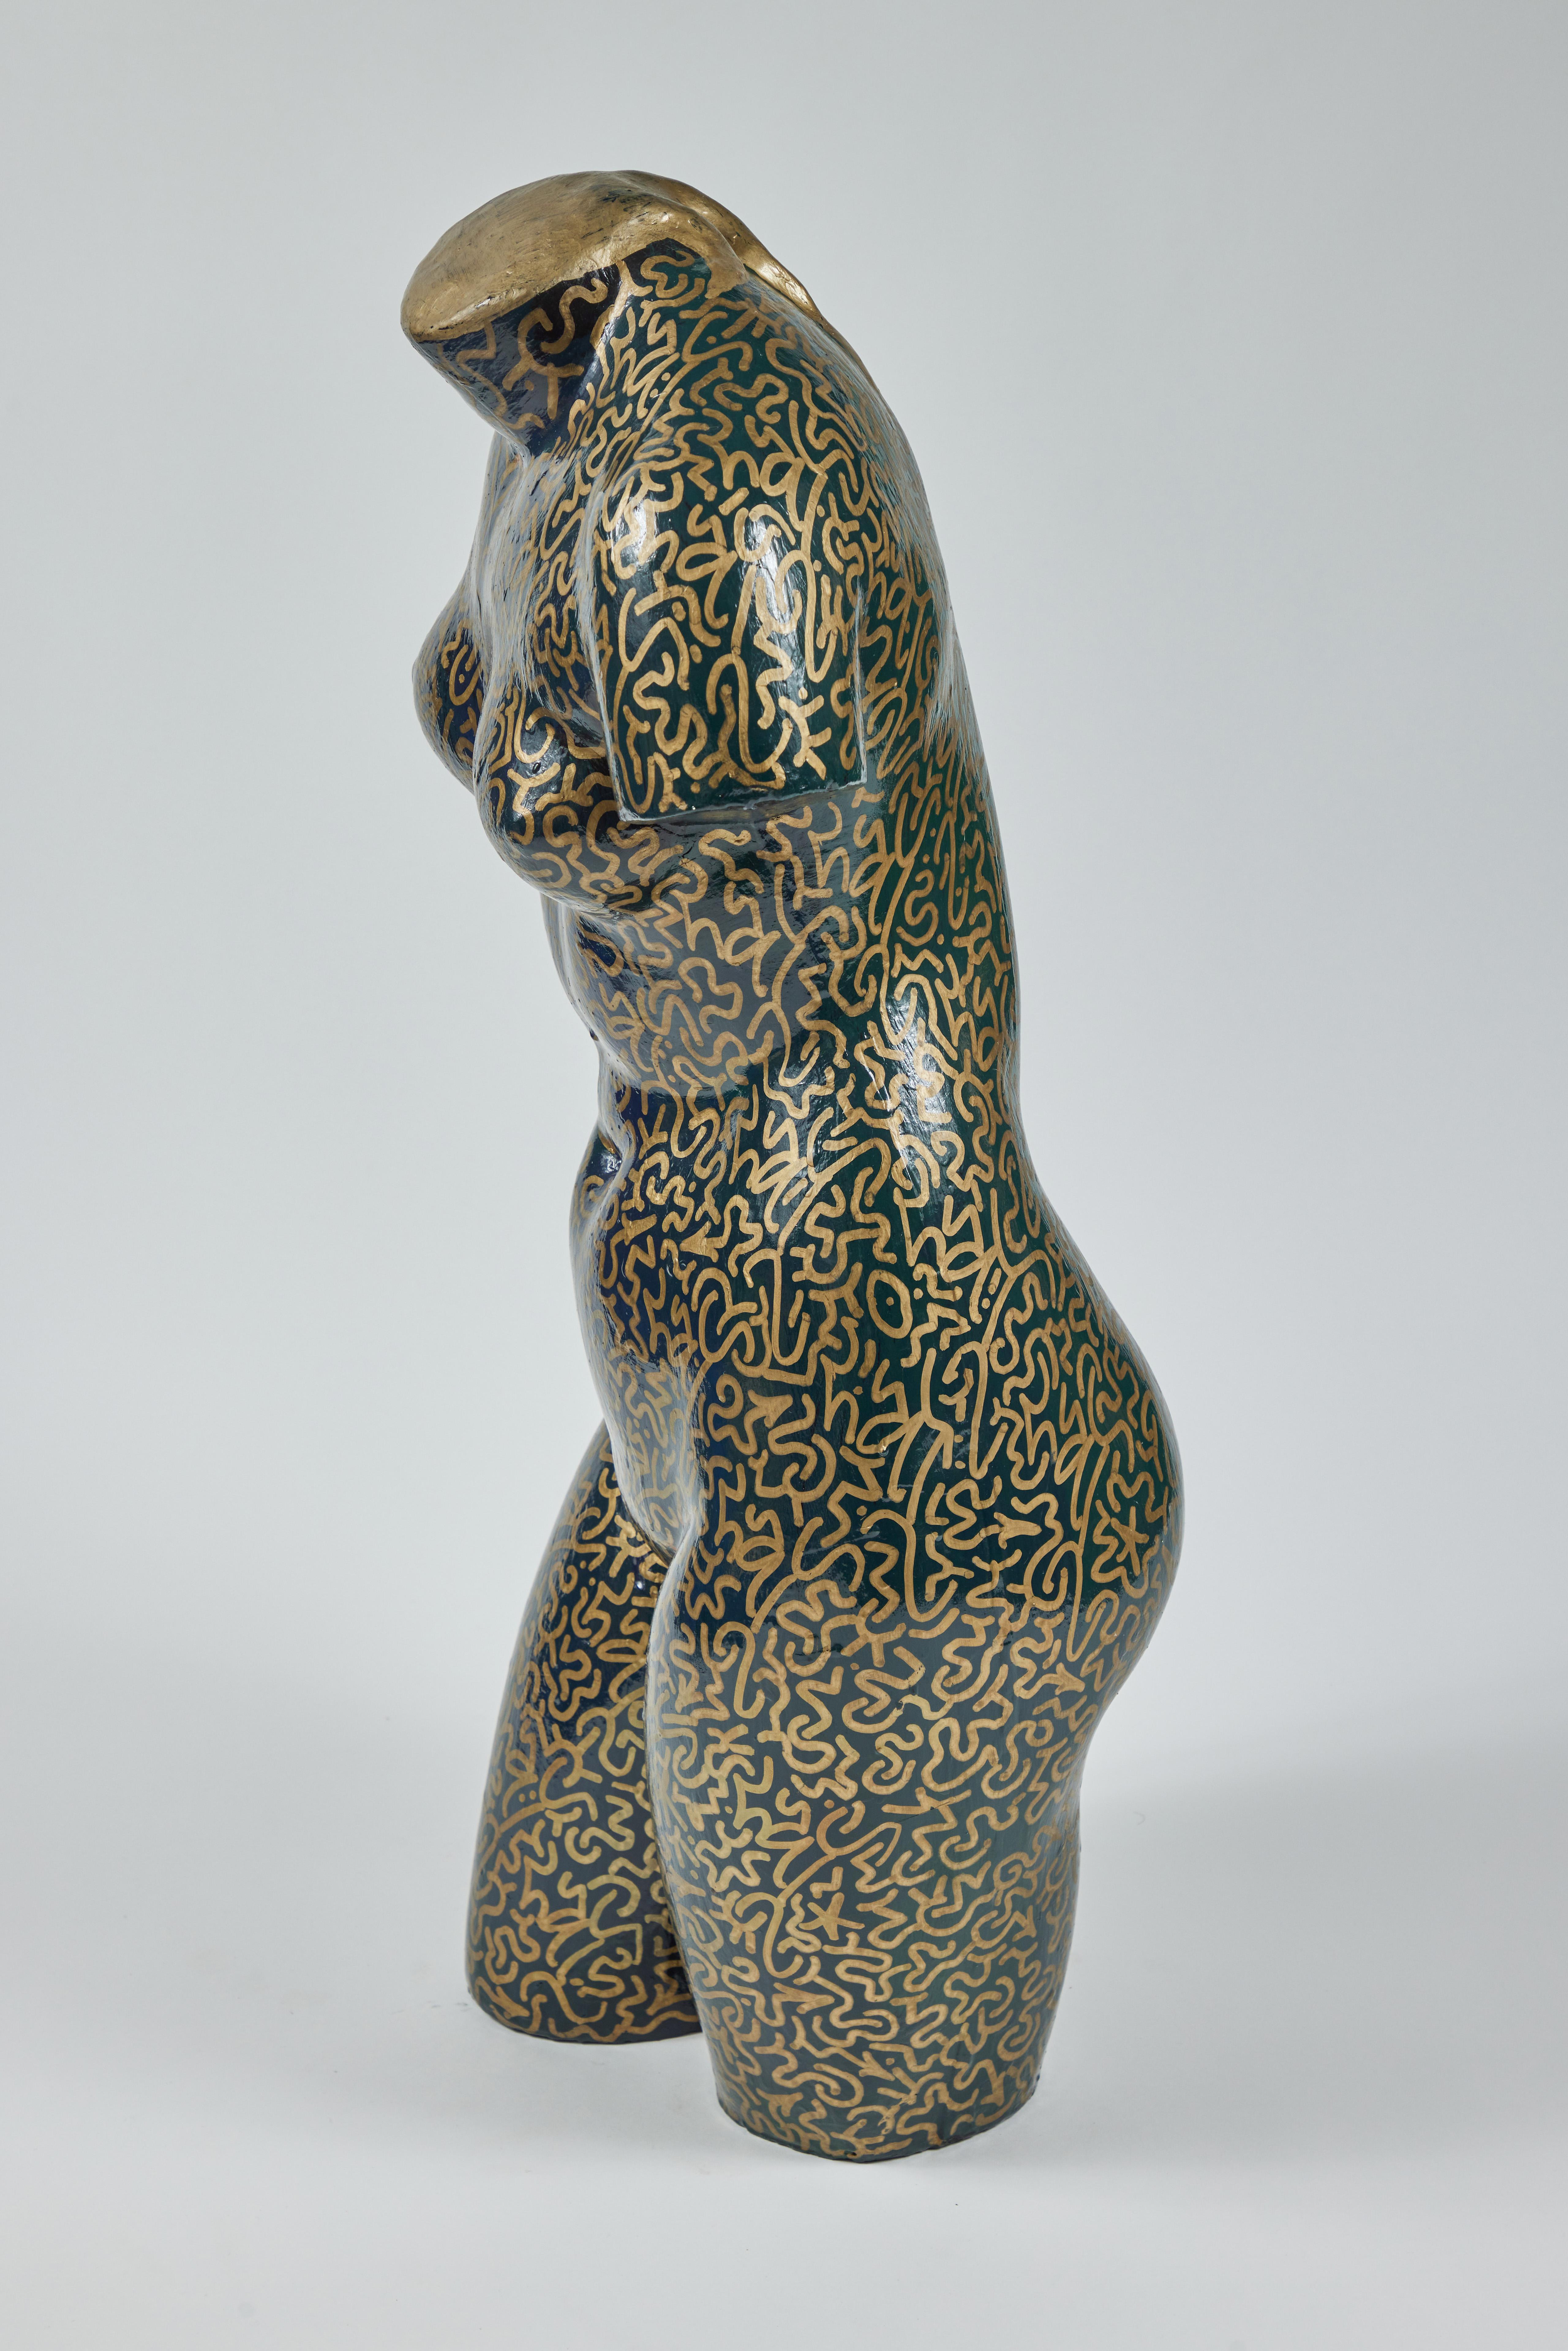 American Graffiti Nude Female Sculpture by L.A. II For Sale